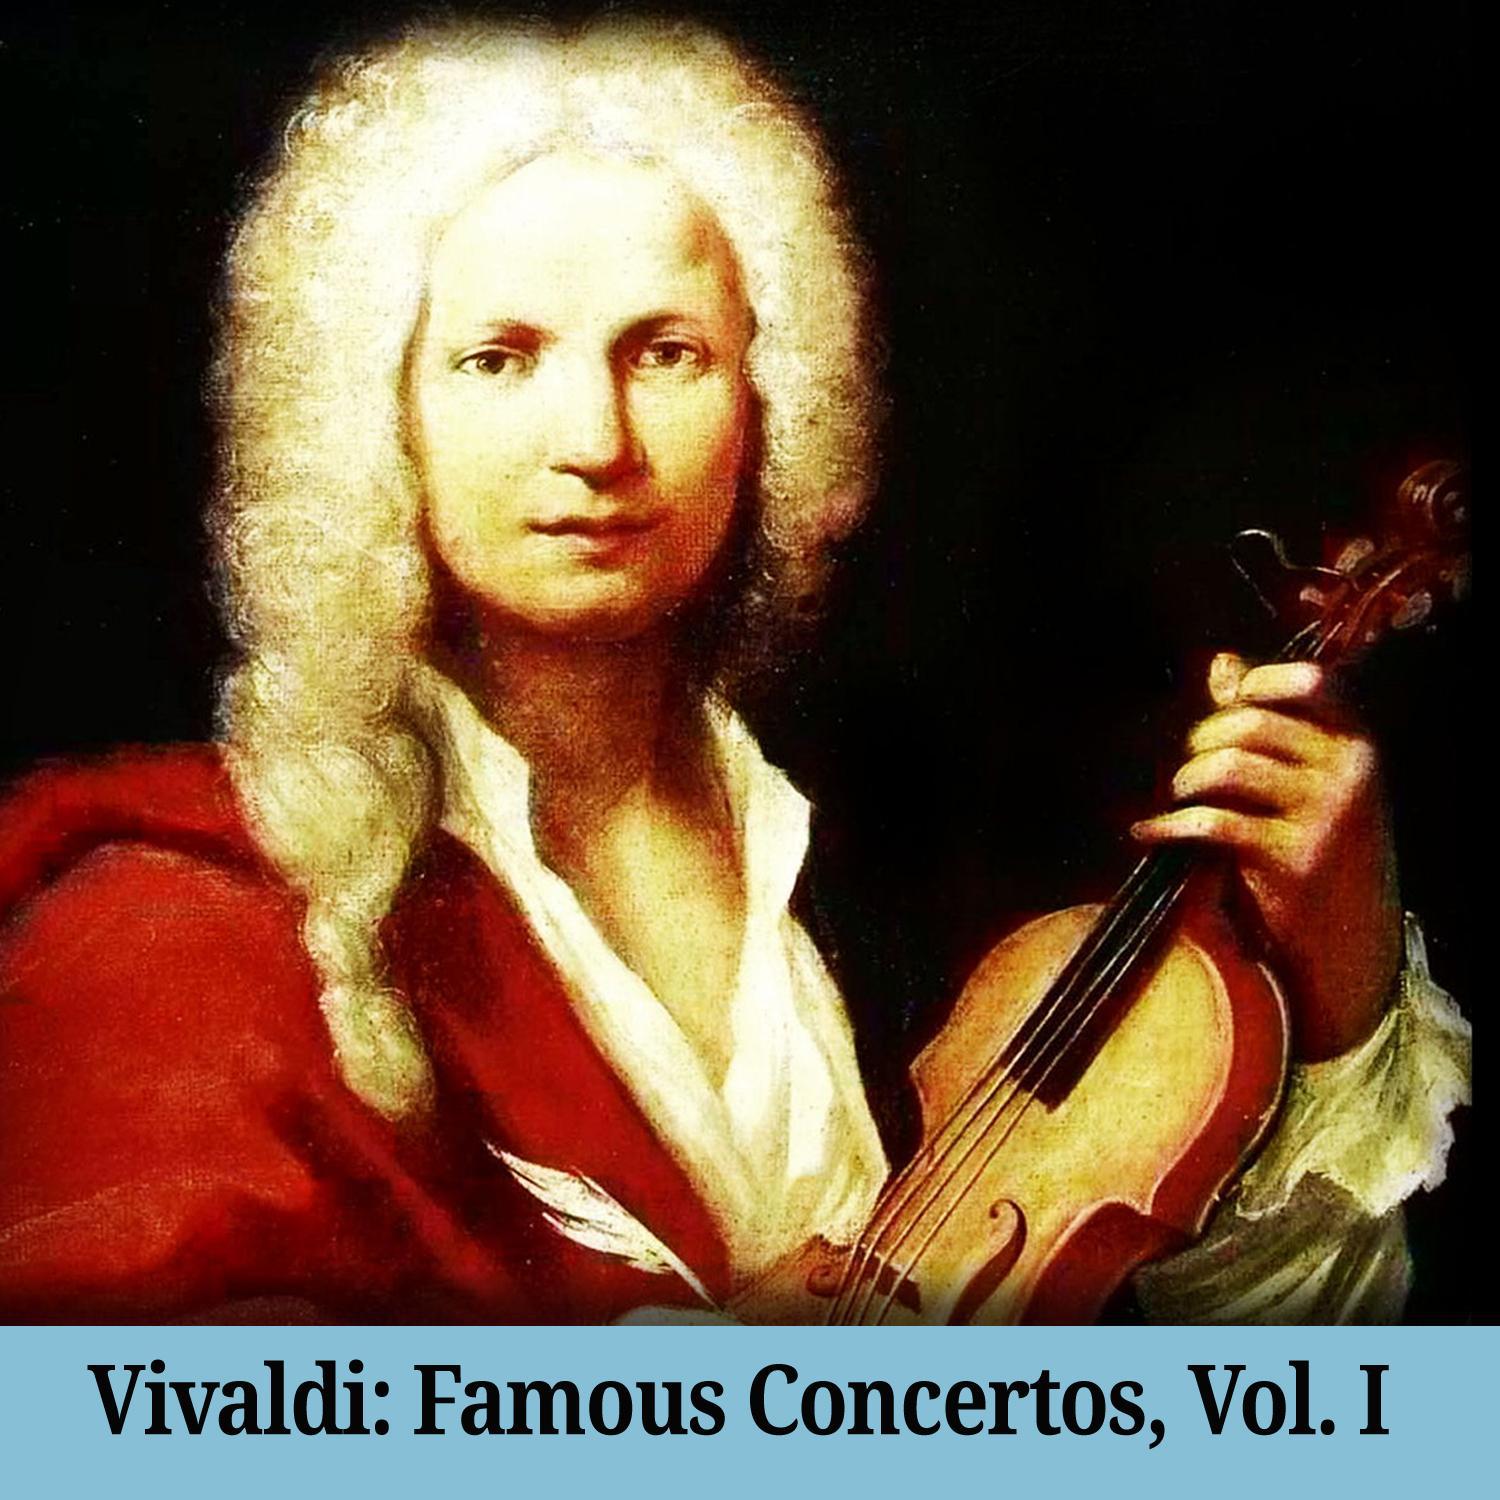 Vivaldi: Famous Concertos, Vol. I专辑